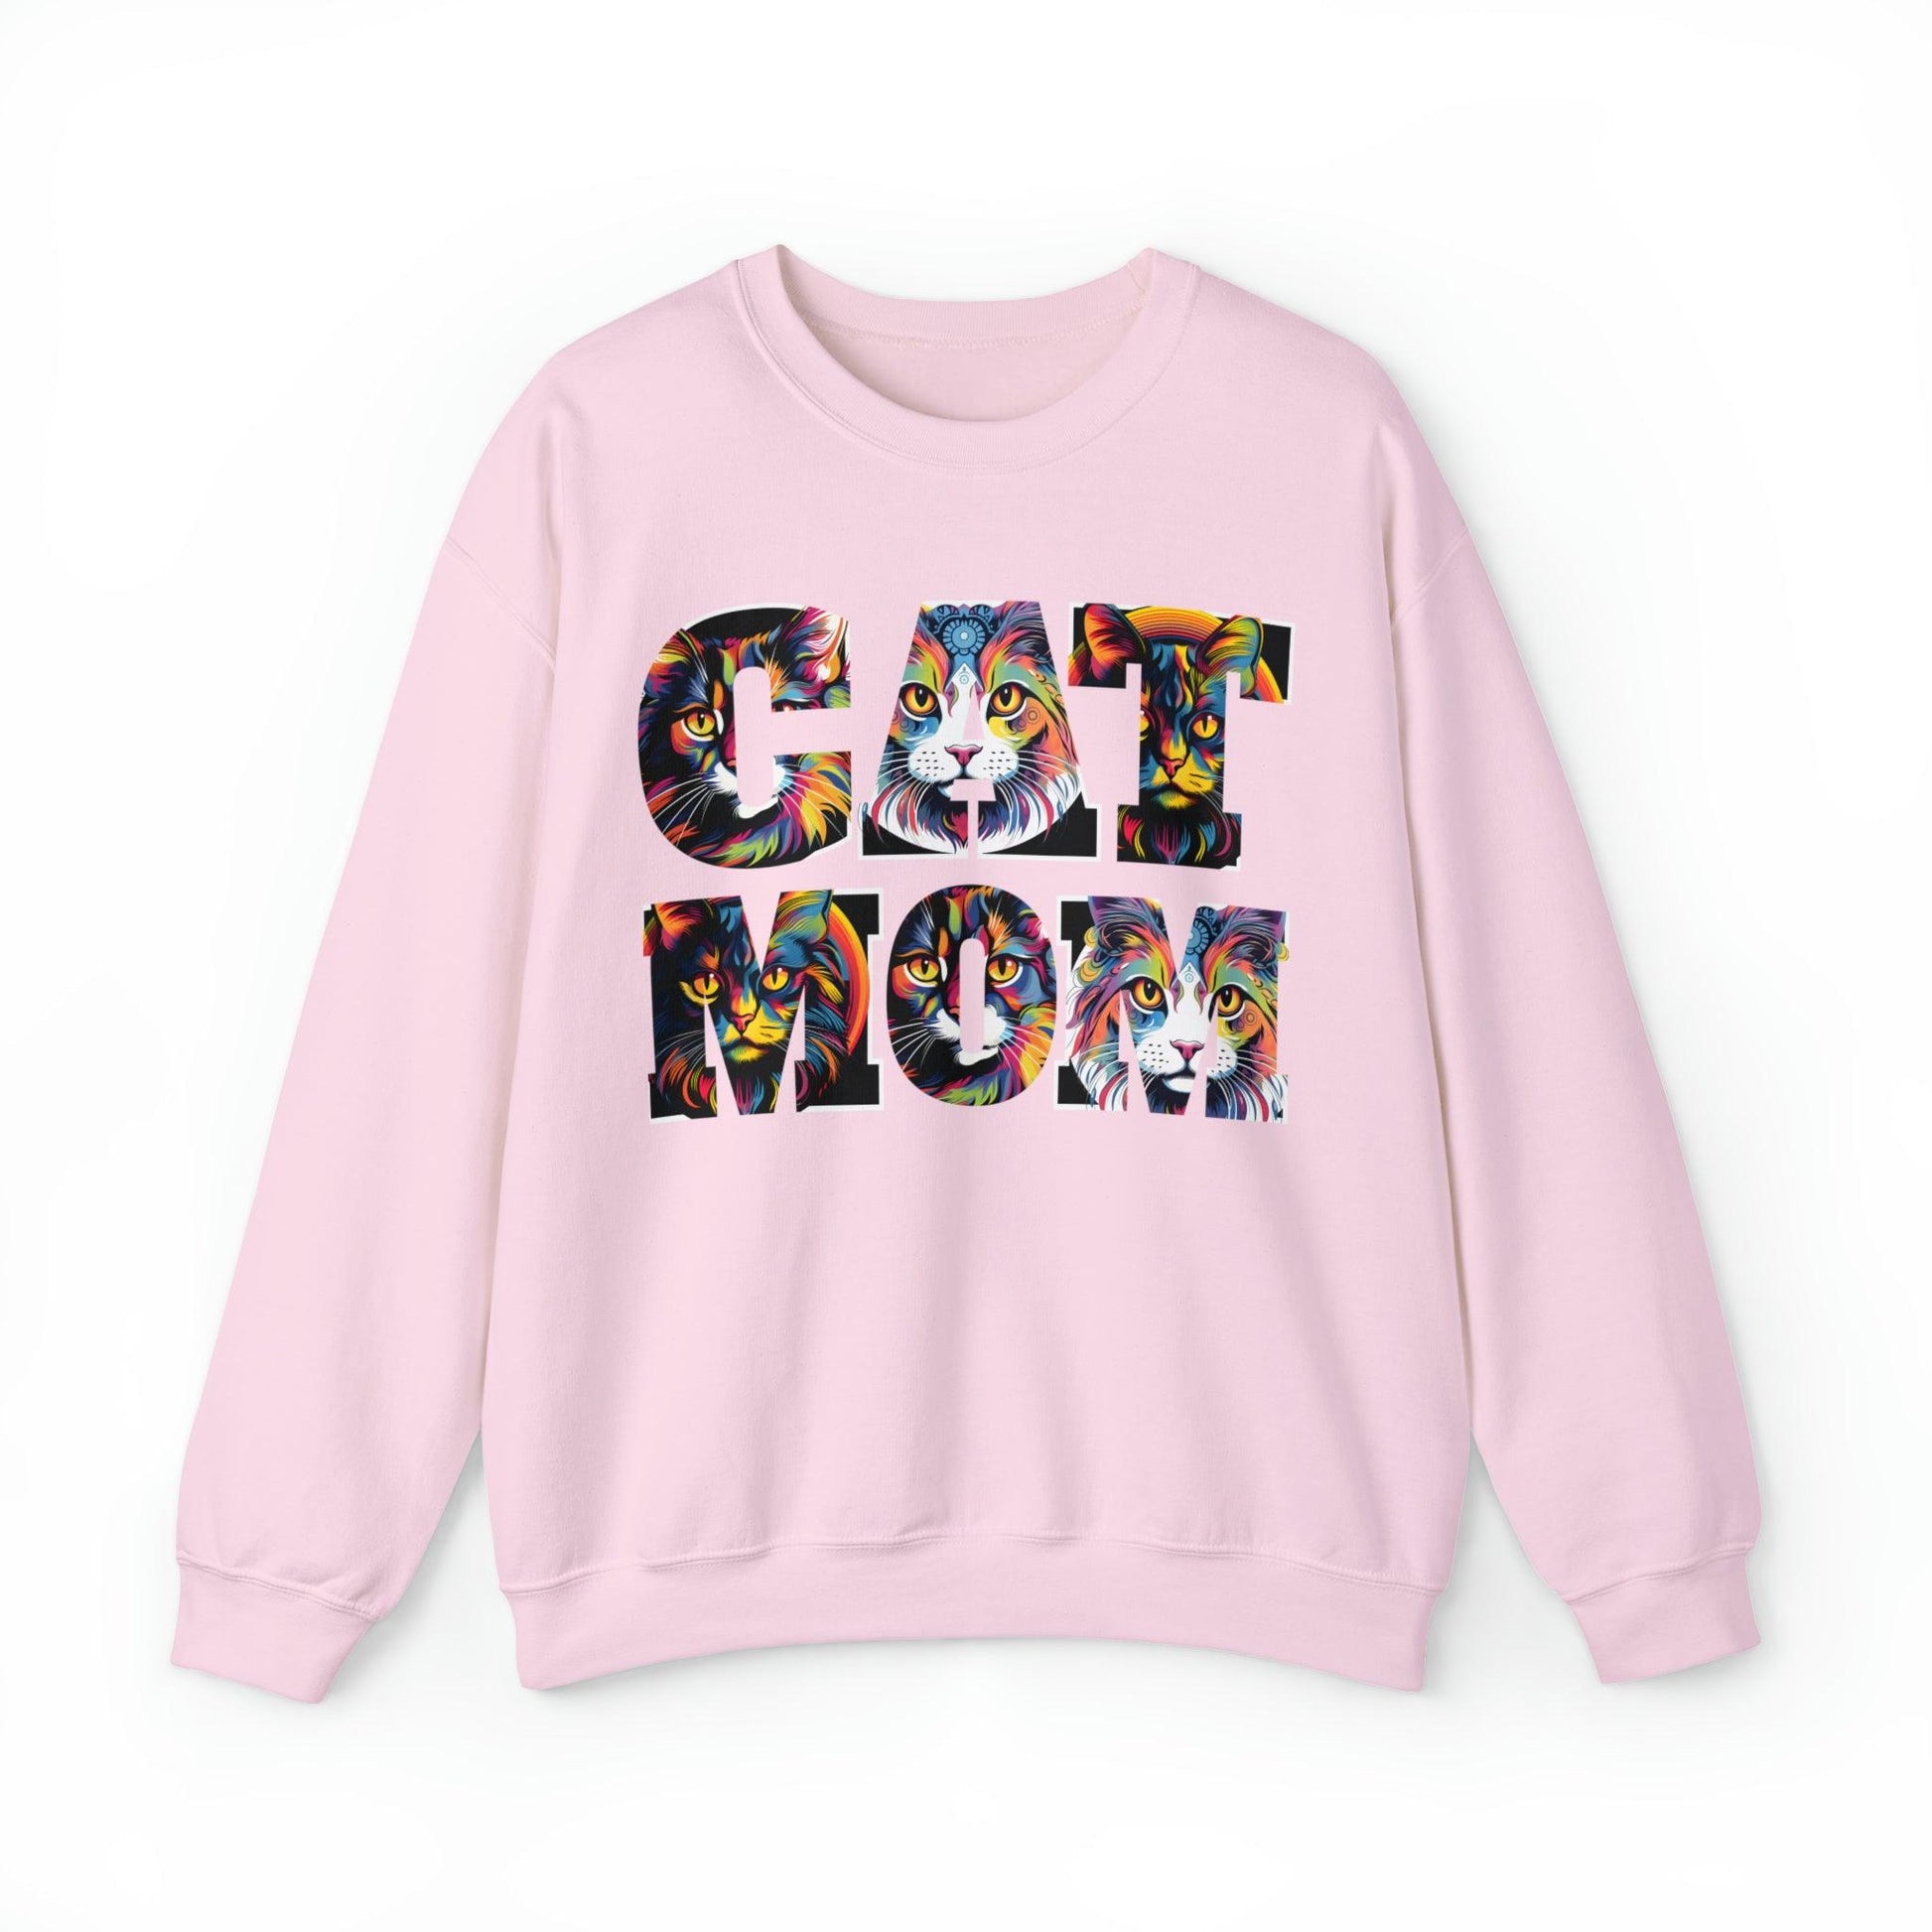 Vintage Cat Sweatshirt Cat Mom Sweatshirt Cat Crewneck Sweatshirt Cat Mom Gift Cat Lover Gift Animal Lover Cat Mama Shirt Cat Lover Sweater - Giftsmojo